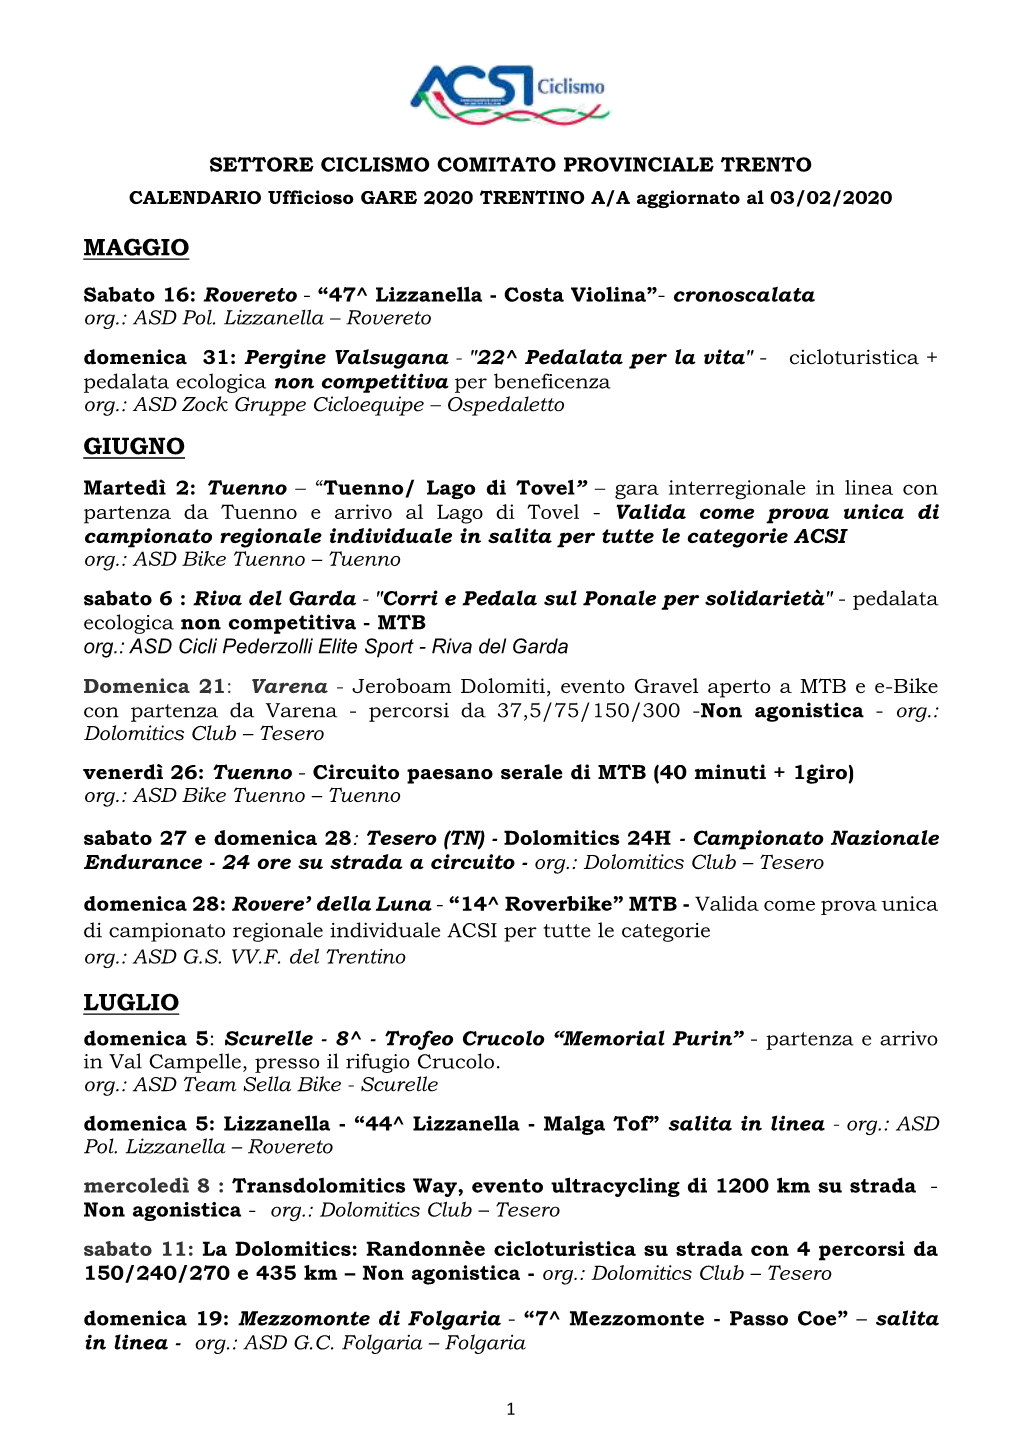 Calendario-Ufficioso-Gare-Acsi-Ciclismo-Trentino-Alto